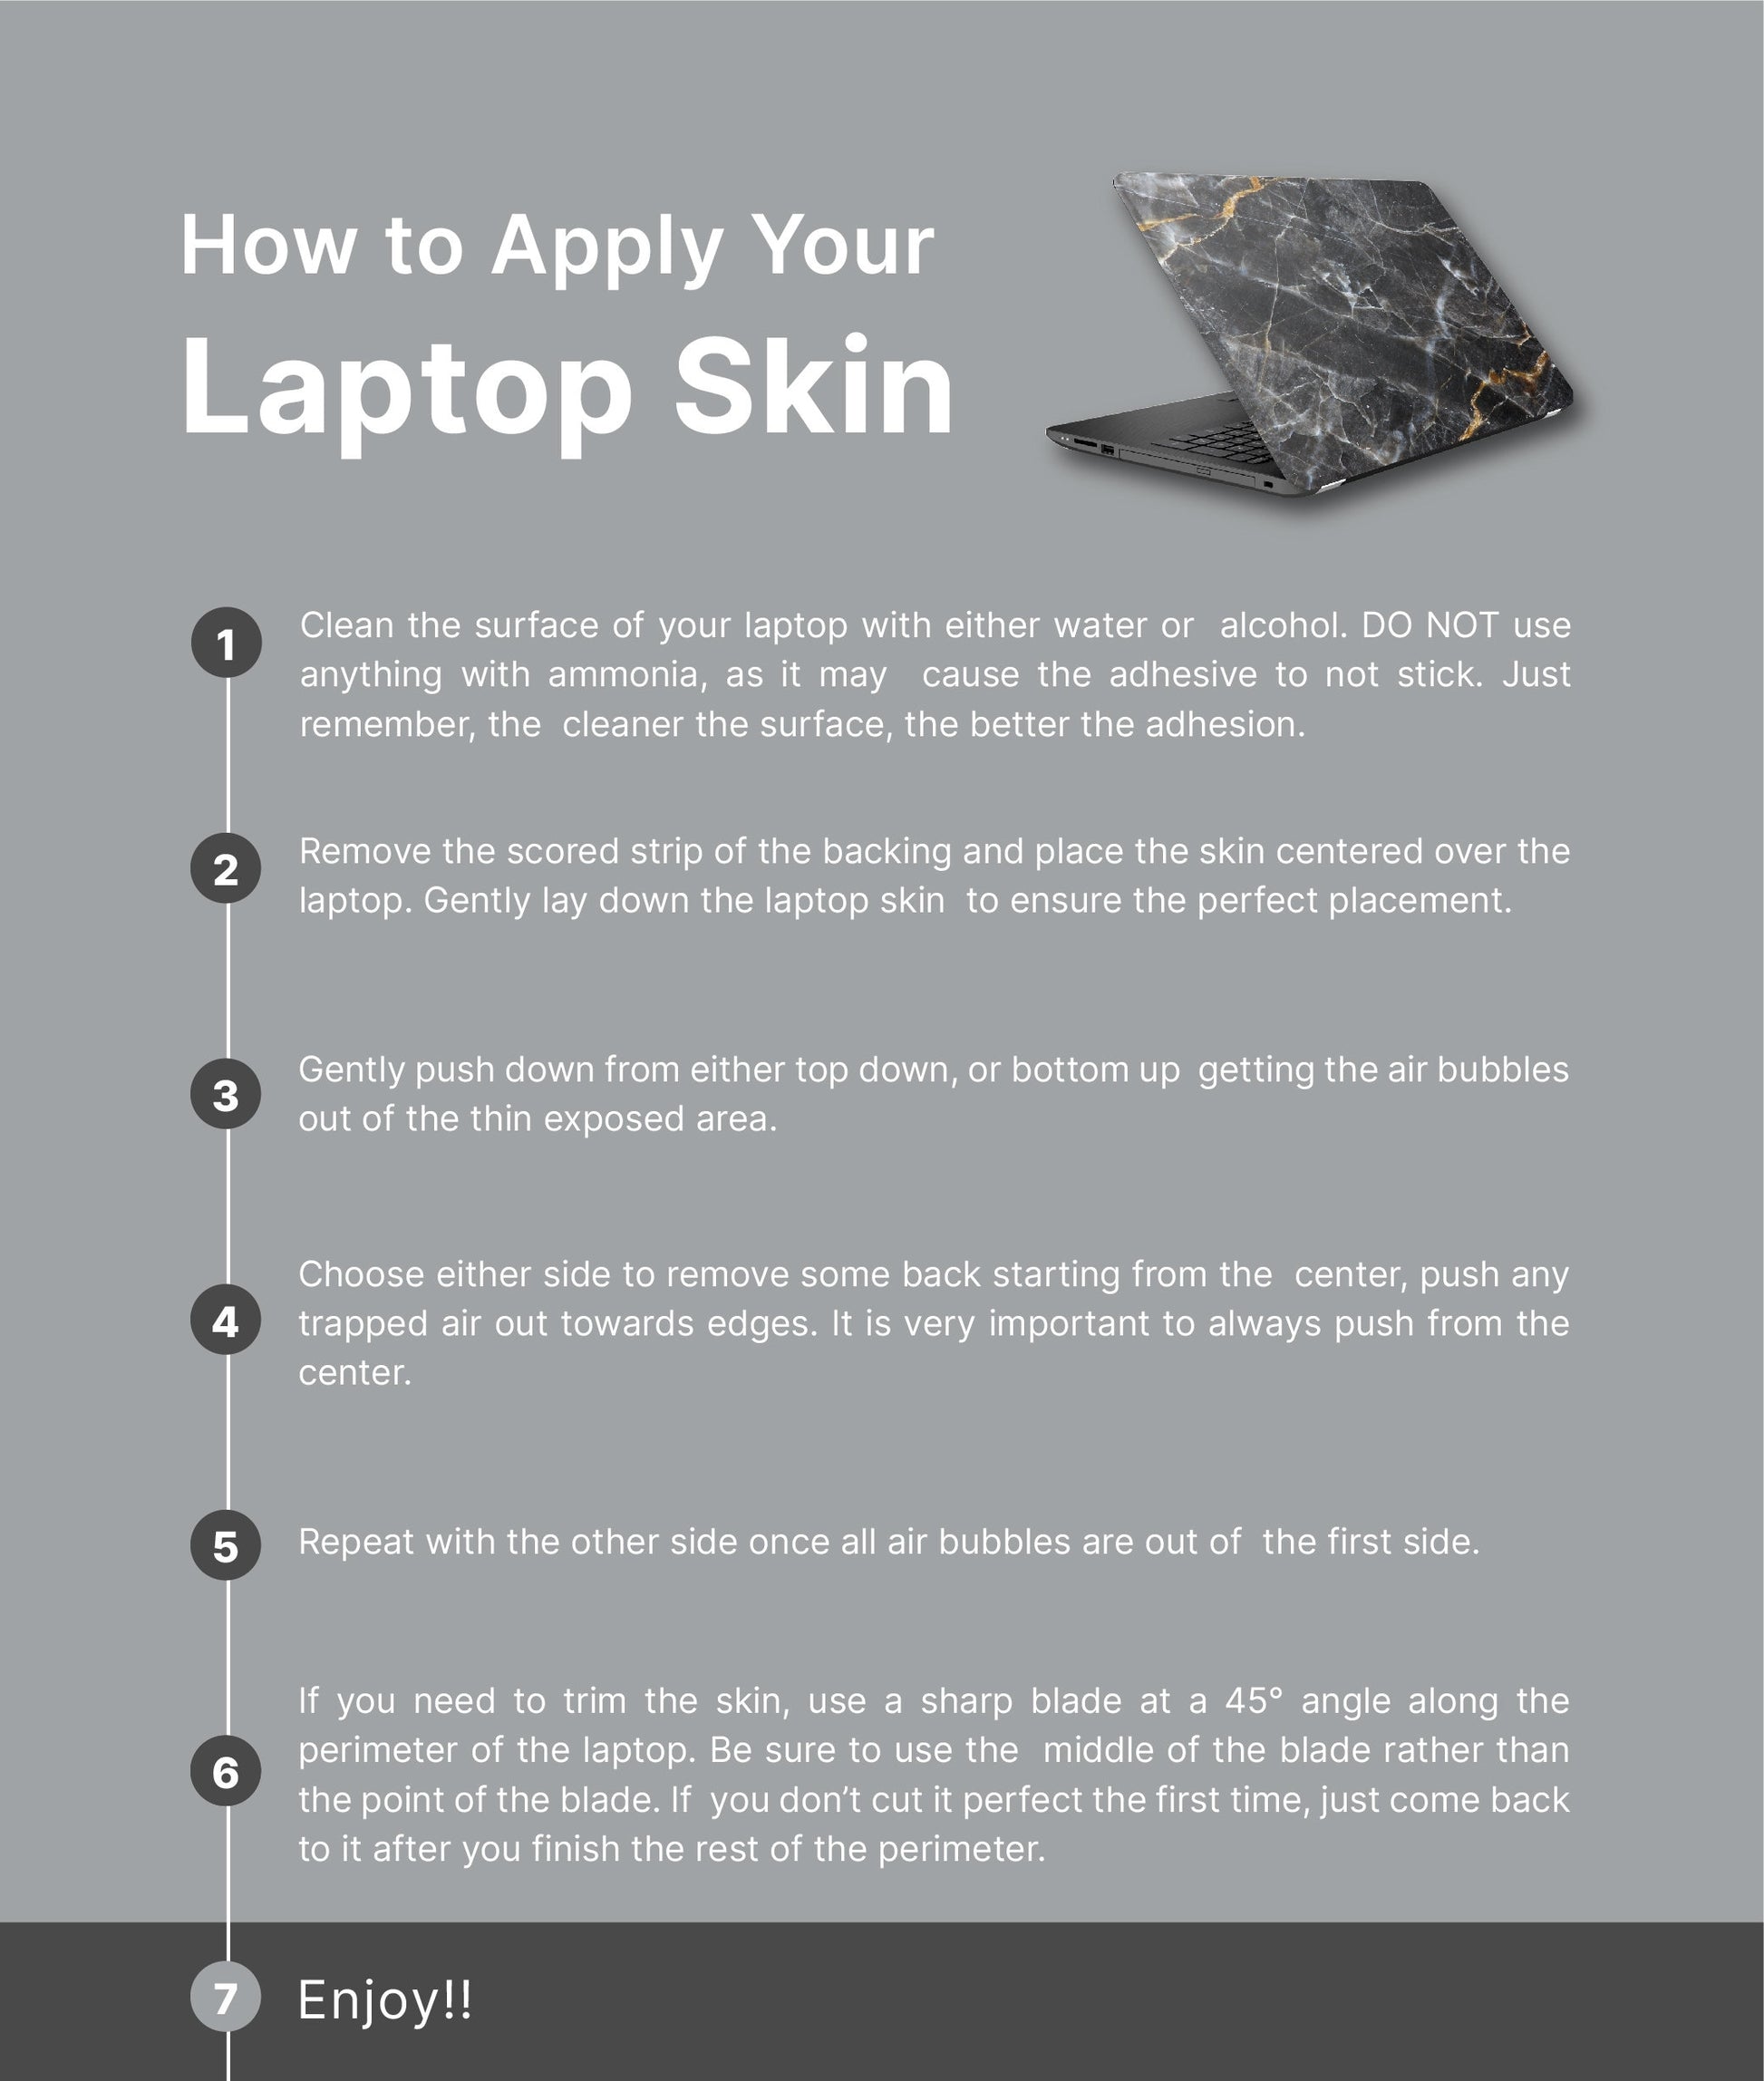 Floral Pattern Laptop Skin, Laptop Cover, Laptop Skins, Removable Laptop Skins, Laptop Decal, Customized Laptop Skin, Laptop Stickers 103 - James & Inks